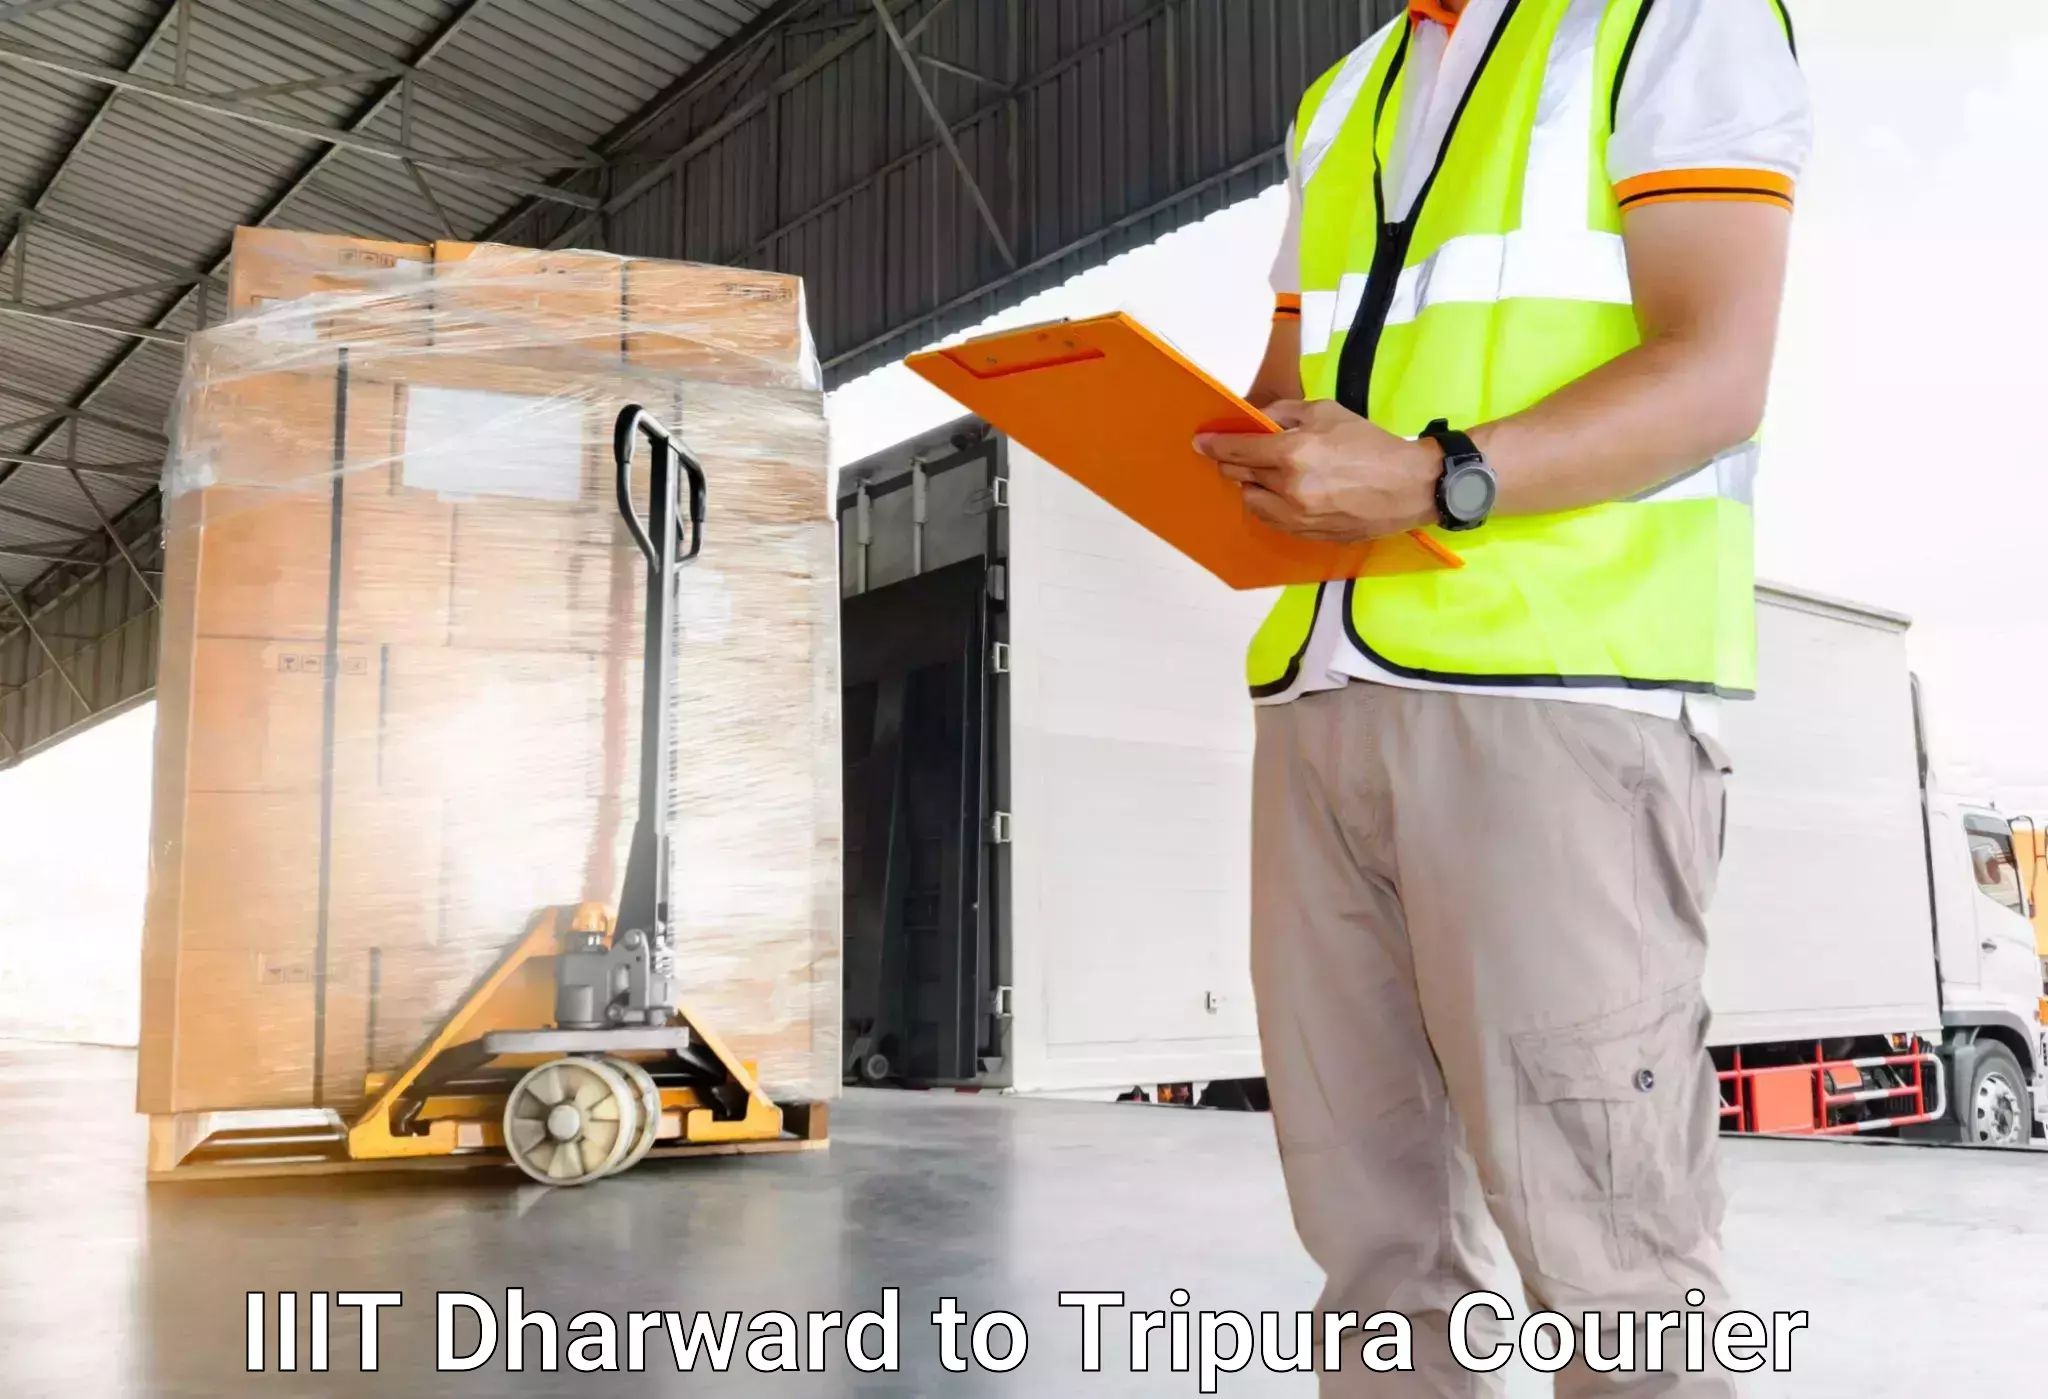 Luggage shipment specialists IIIT Dharward to Kamalpur